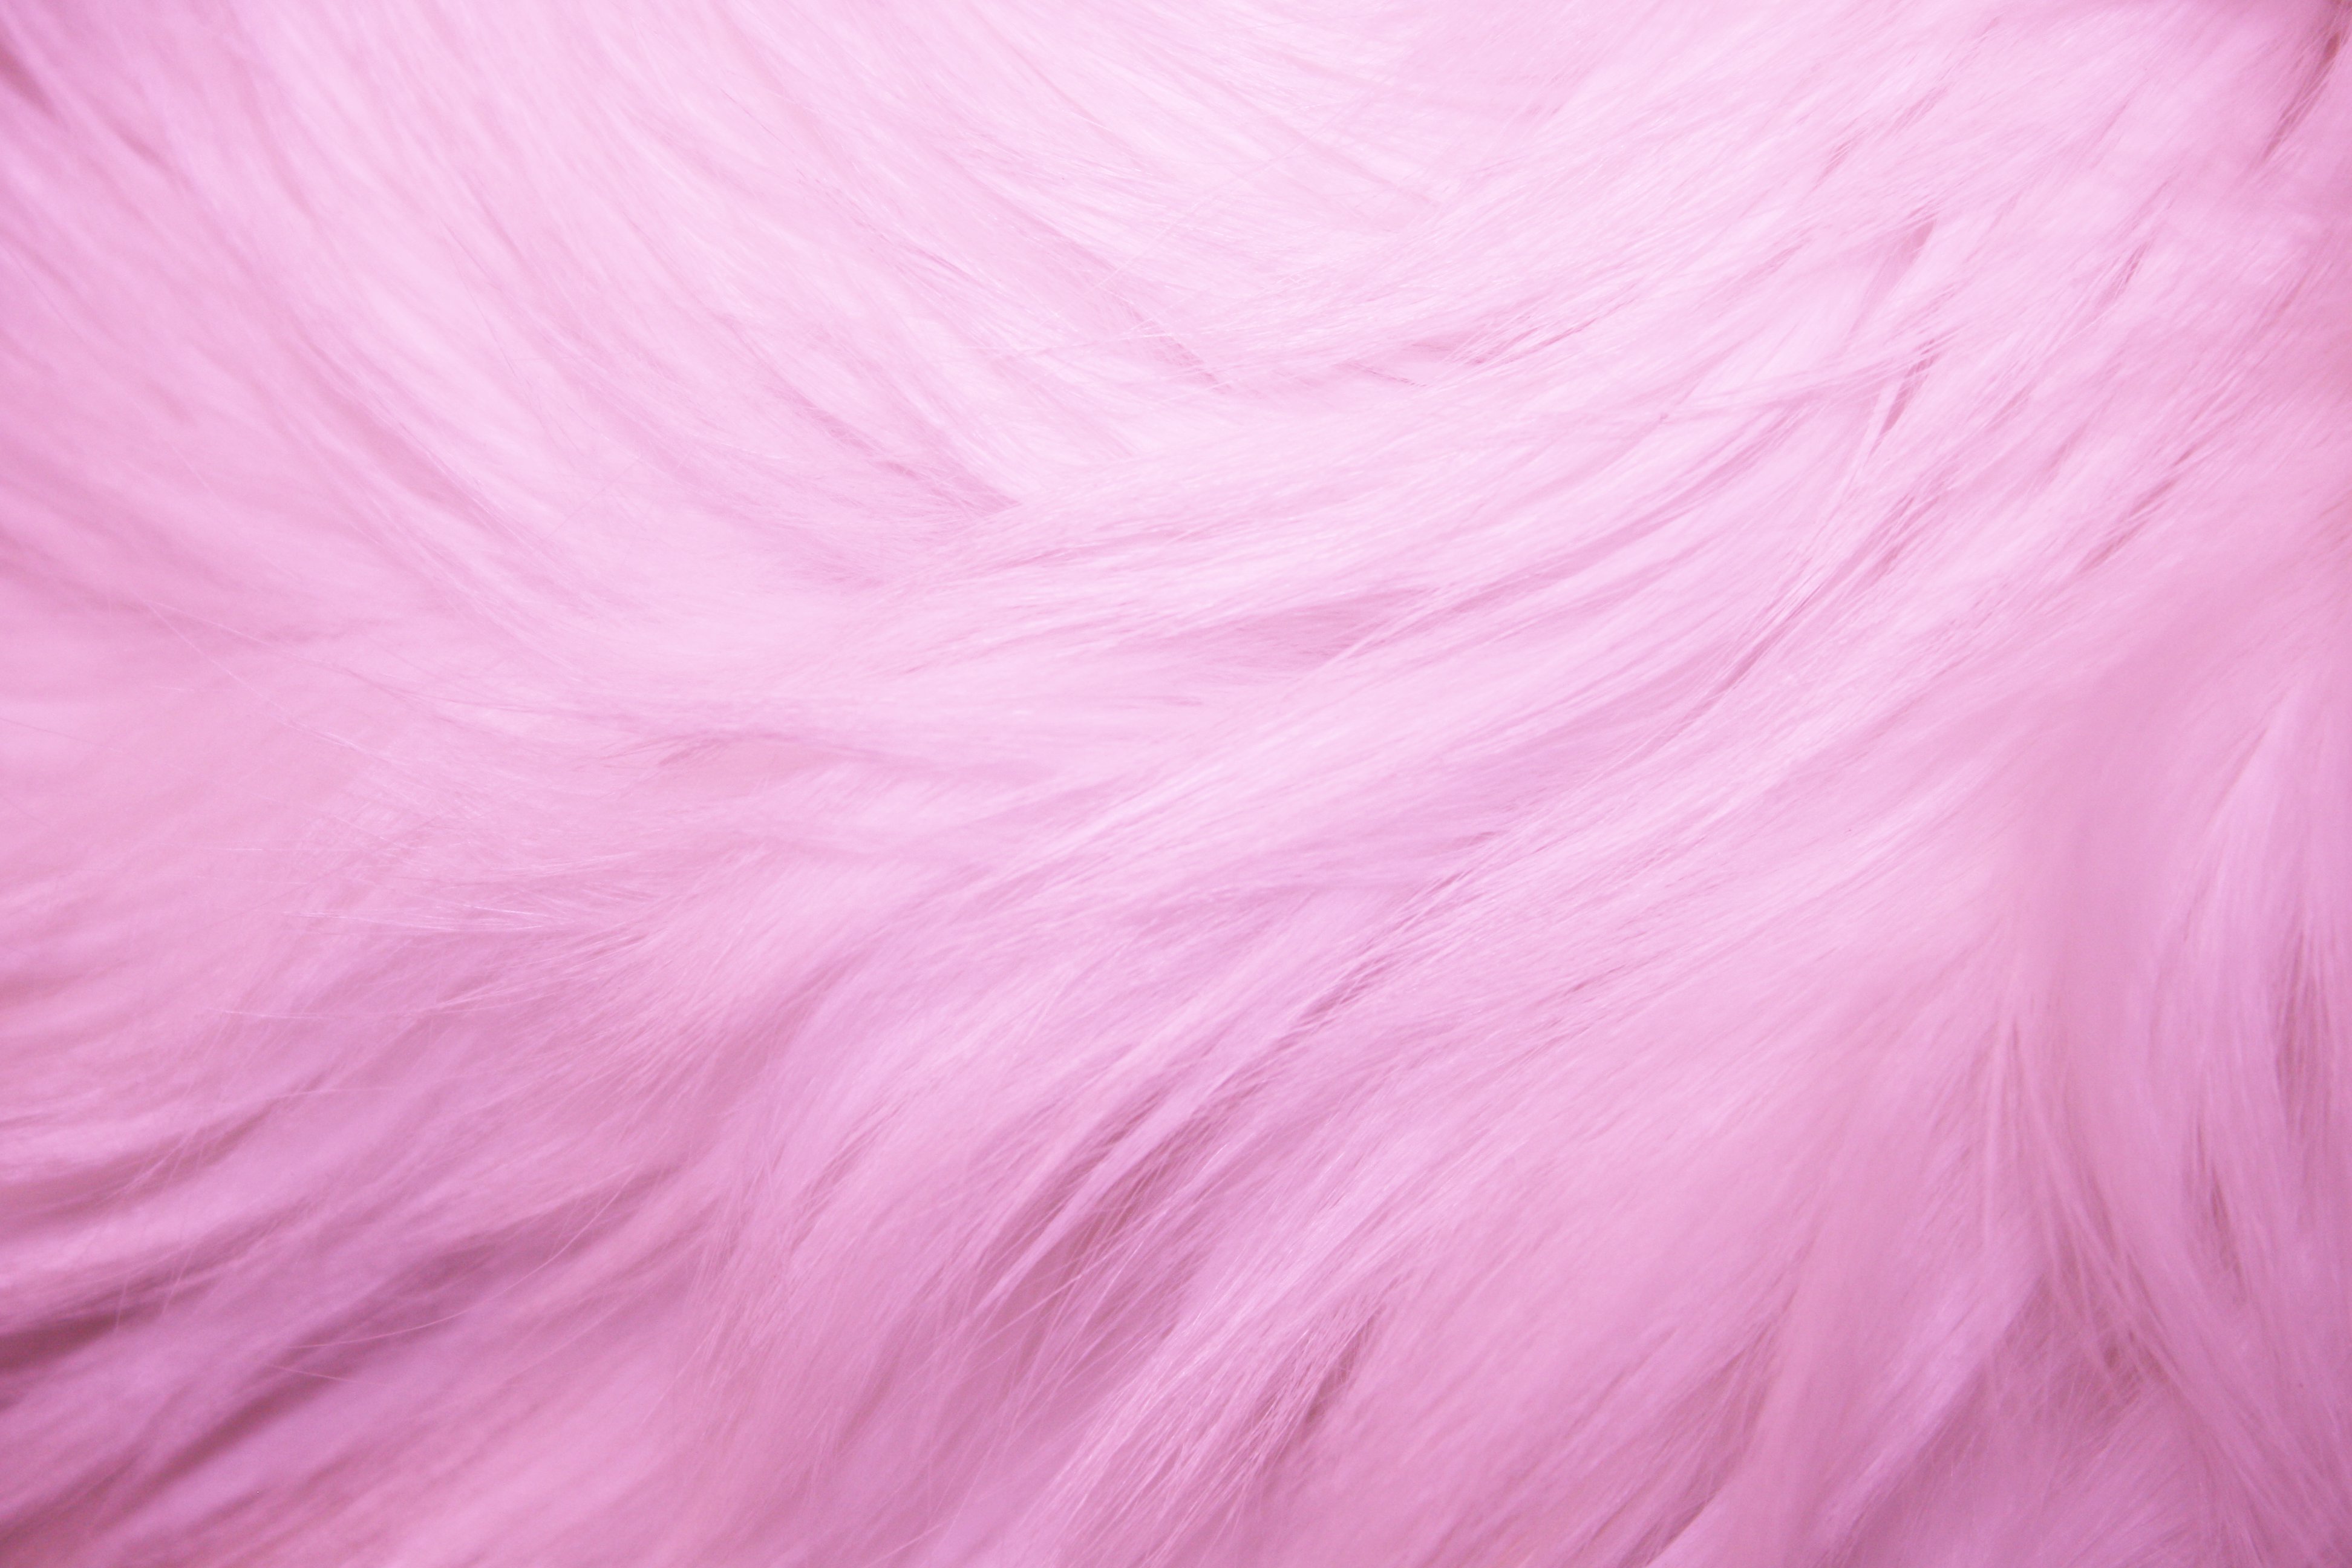 Pink Fur Texture Picture Free Photograph Photos Public Domain